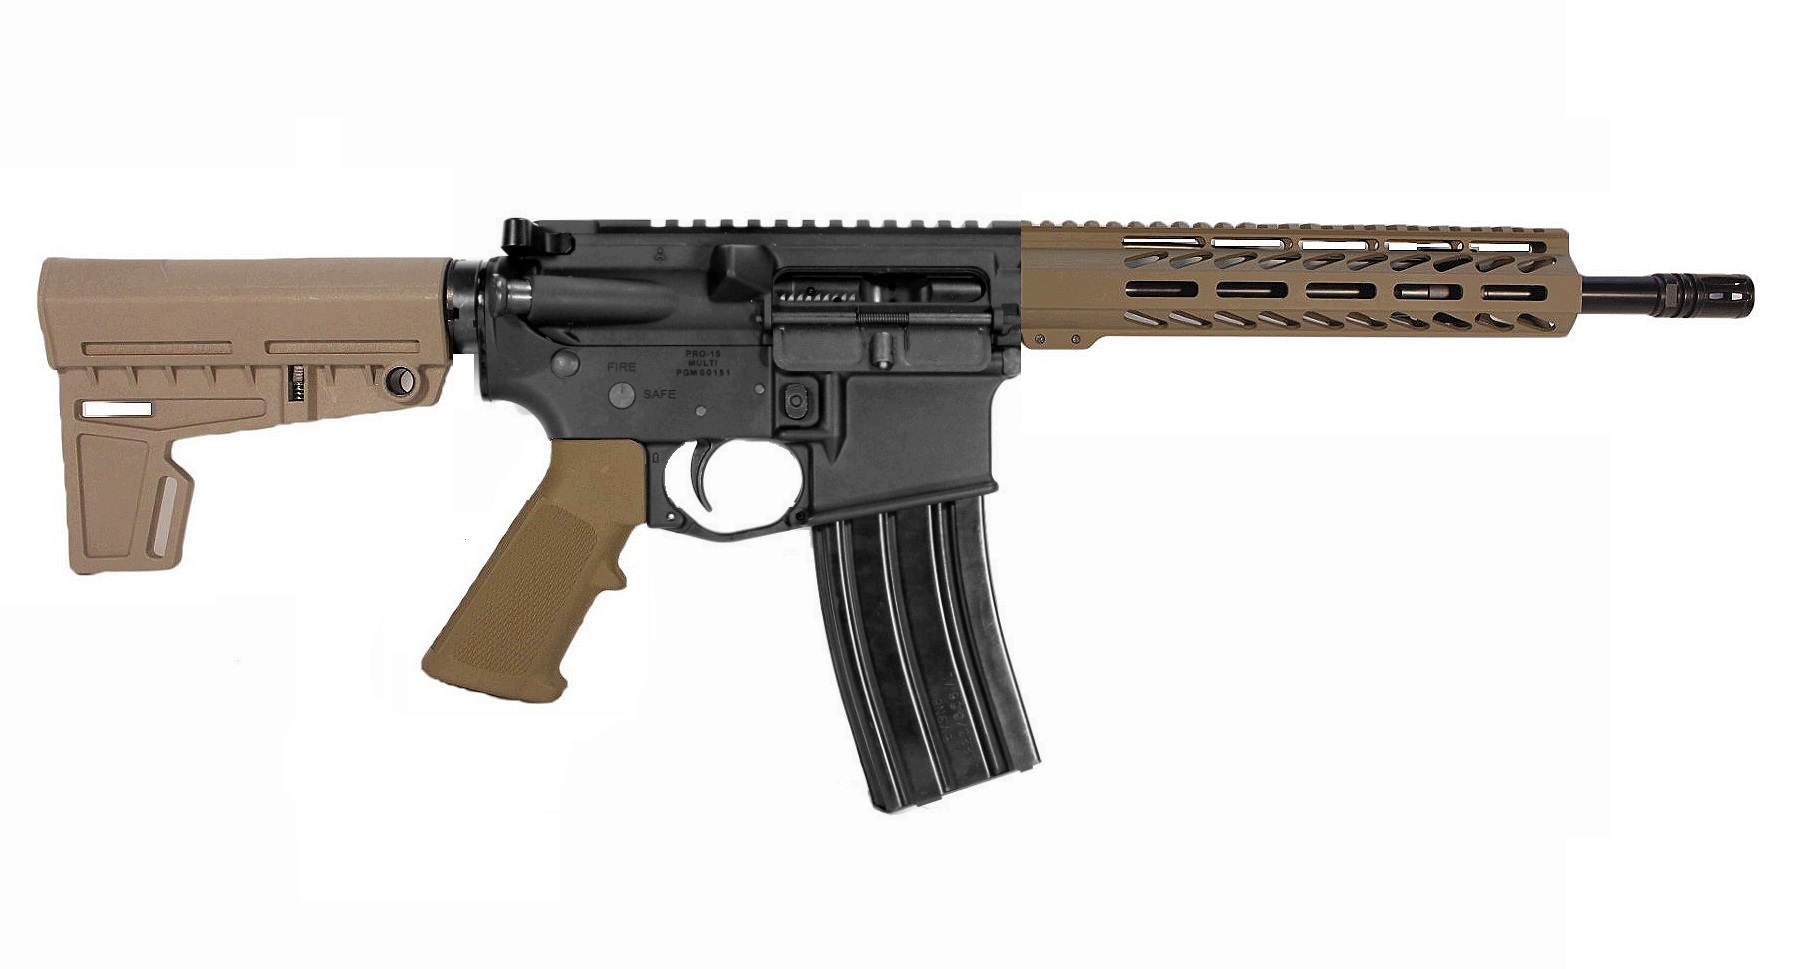 12.5 inch 6.5 Grendel AR Pistol in BLK/FDE